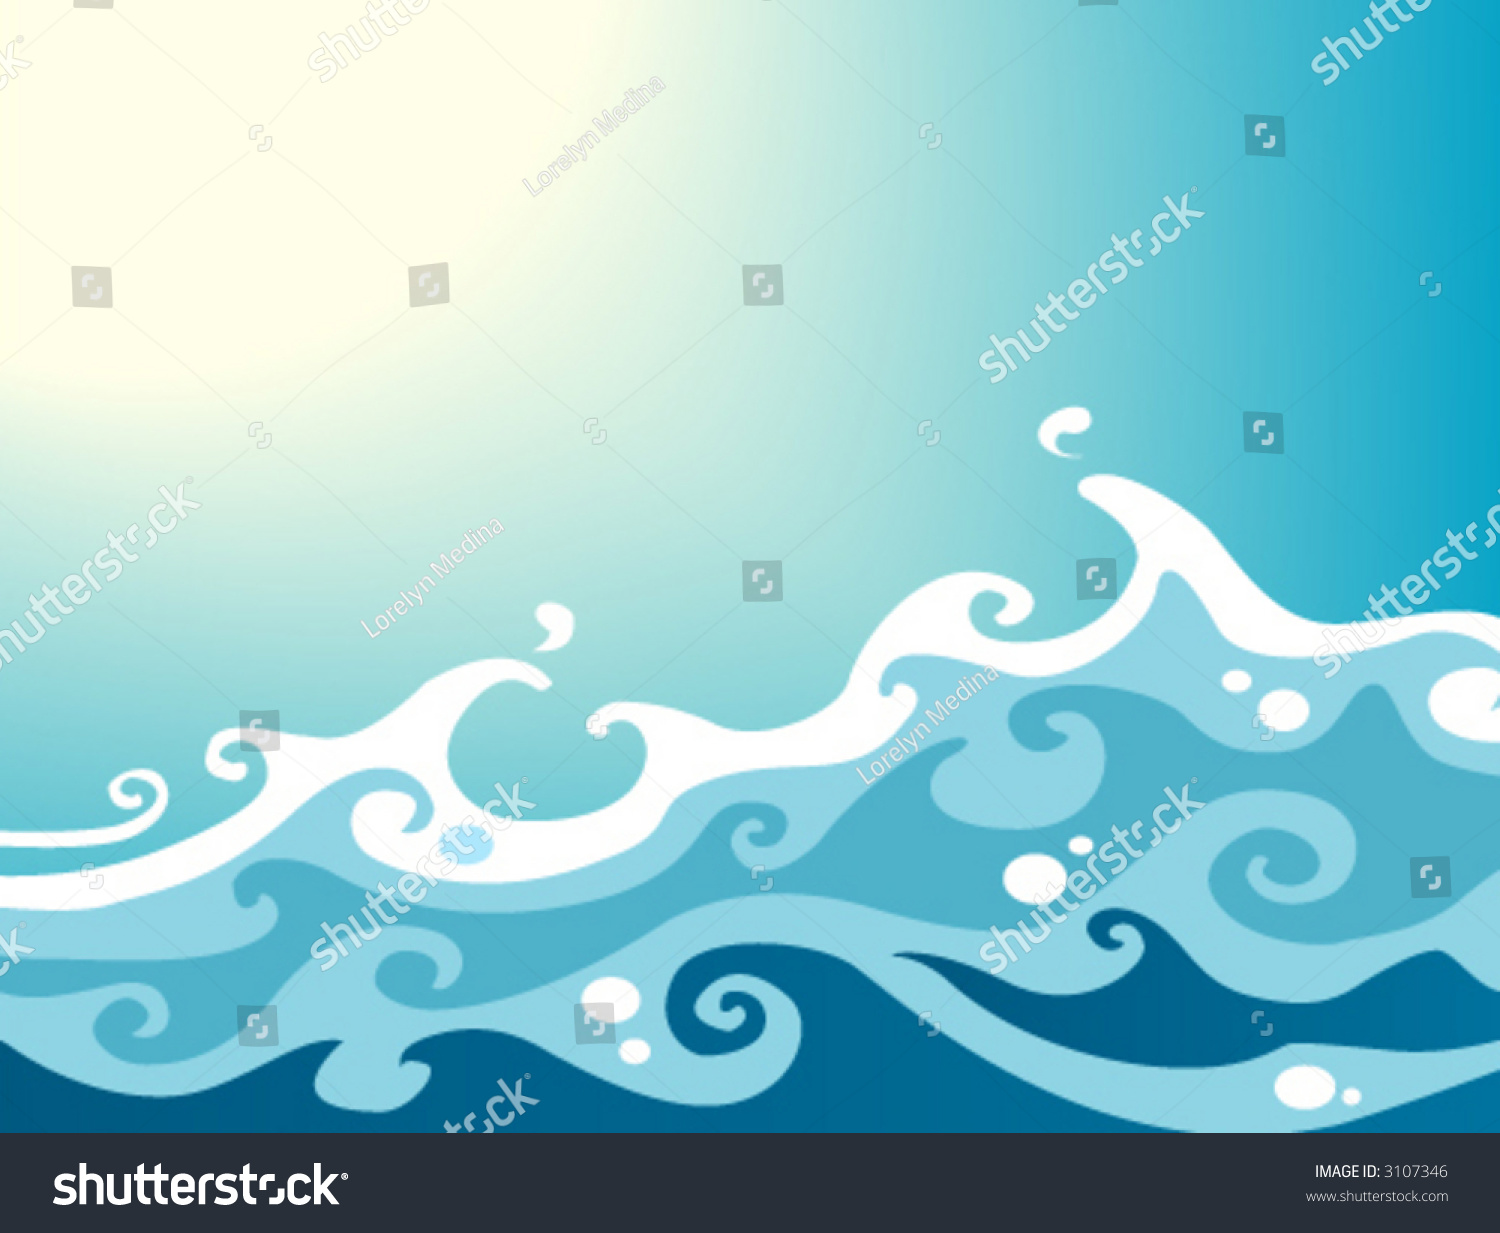 Waves - Vector - 3107346 : Shutterstock